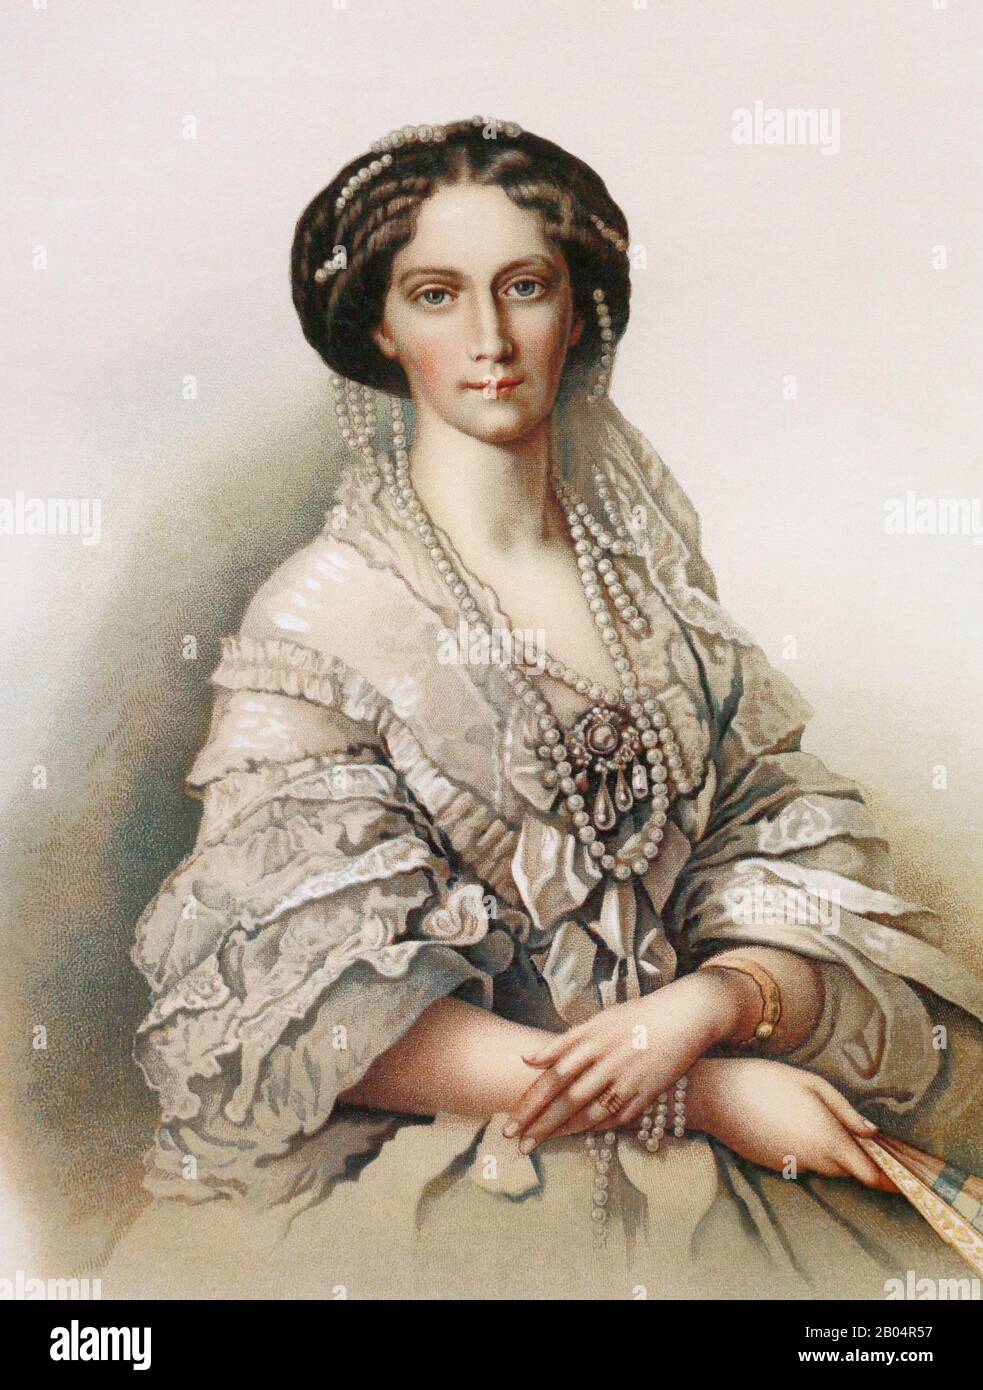 Imperatrice Russa Maria Alexandrovna. Pittura del 19th secolo. Foto Stock